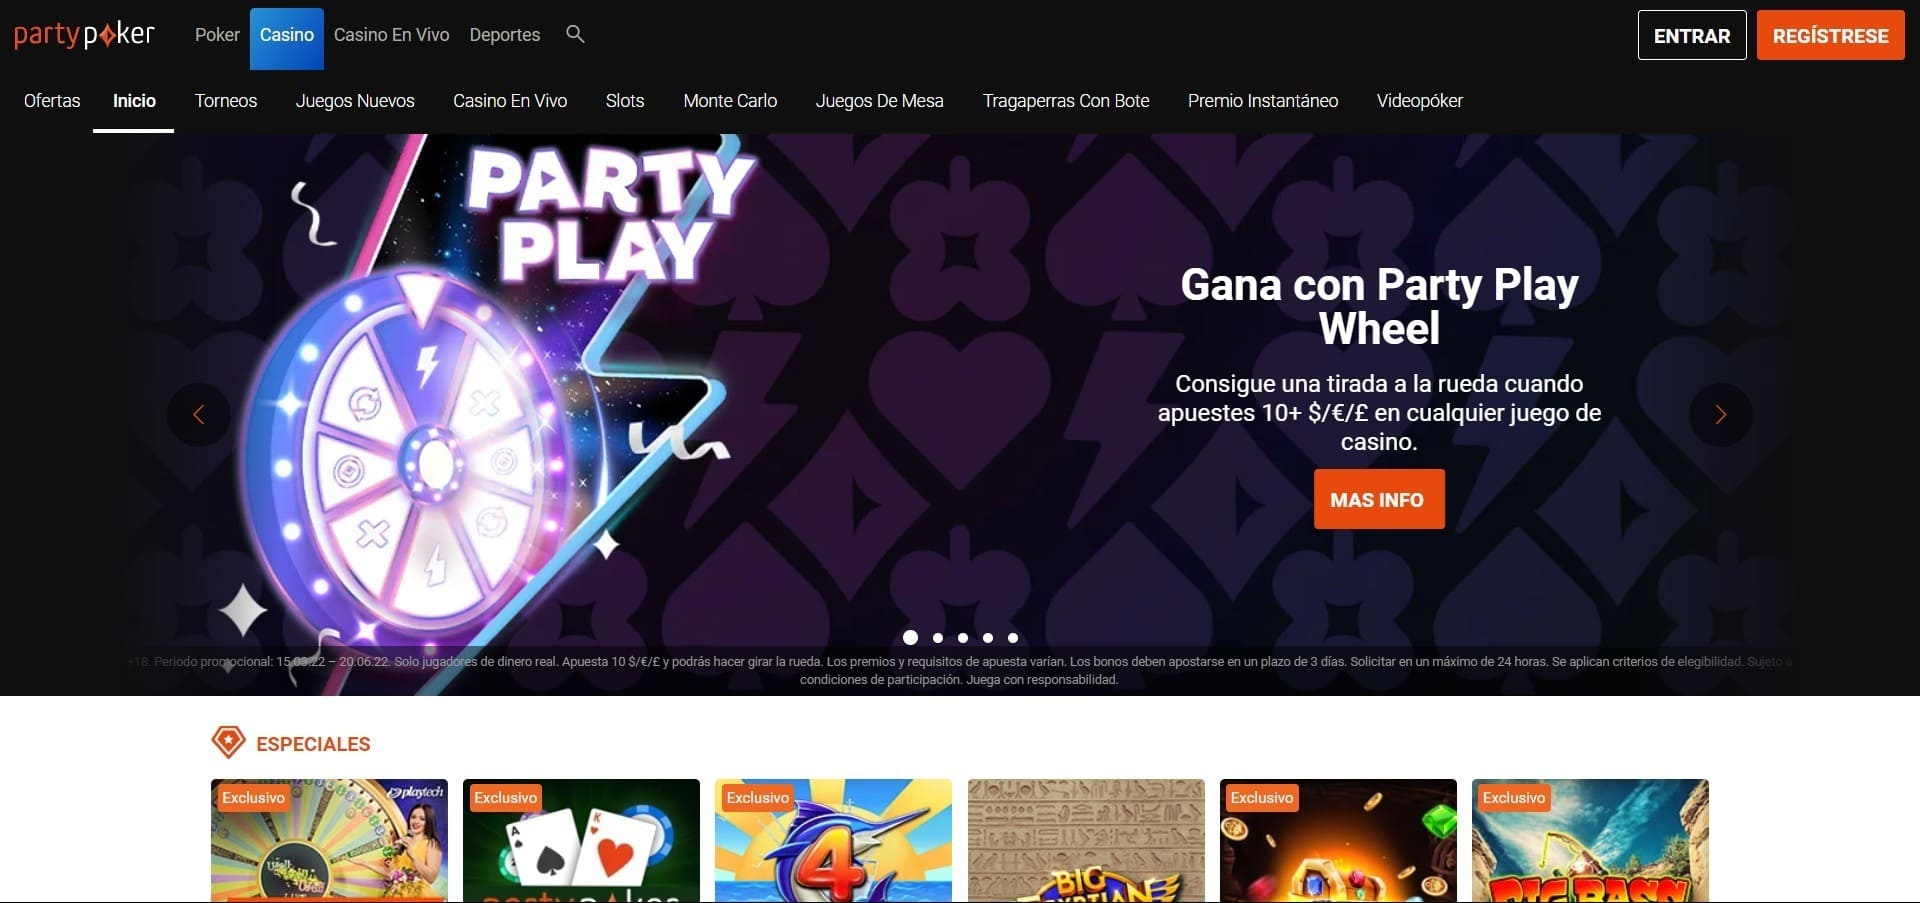 Sitio web oficial de la Partypoker Casino